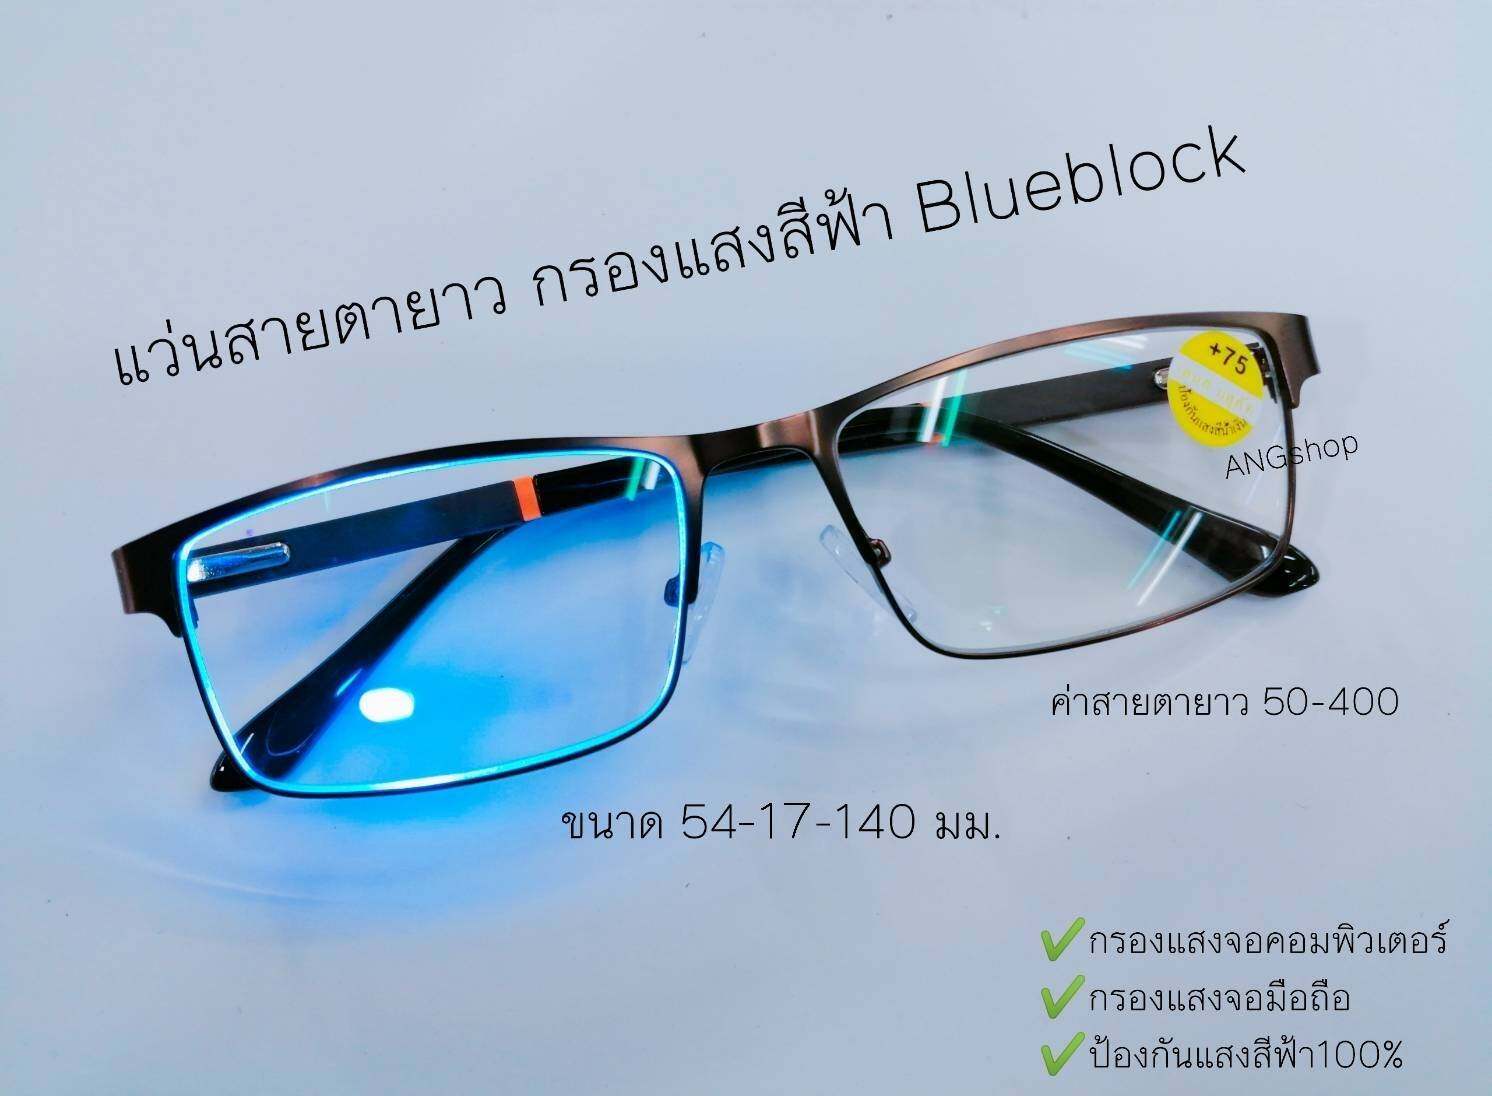 แว่นสายตายาว Blue Block กรองแสงสีฟ้า ขาสปริง จอมือถือ จอคอม  แว่นตา แว่น แว่นสายตา สายตาสั้น สายตายาว